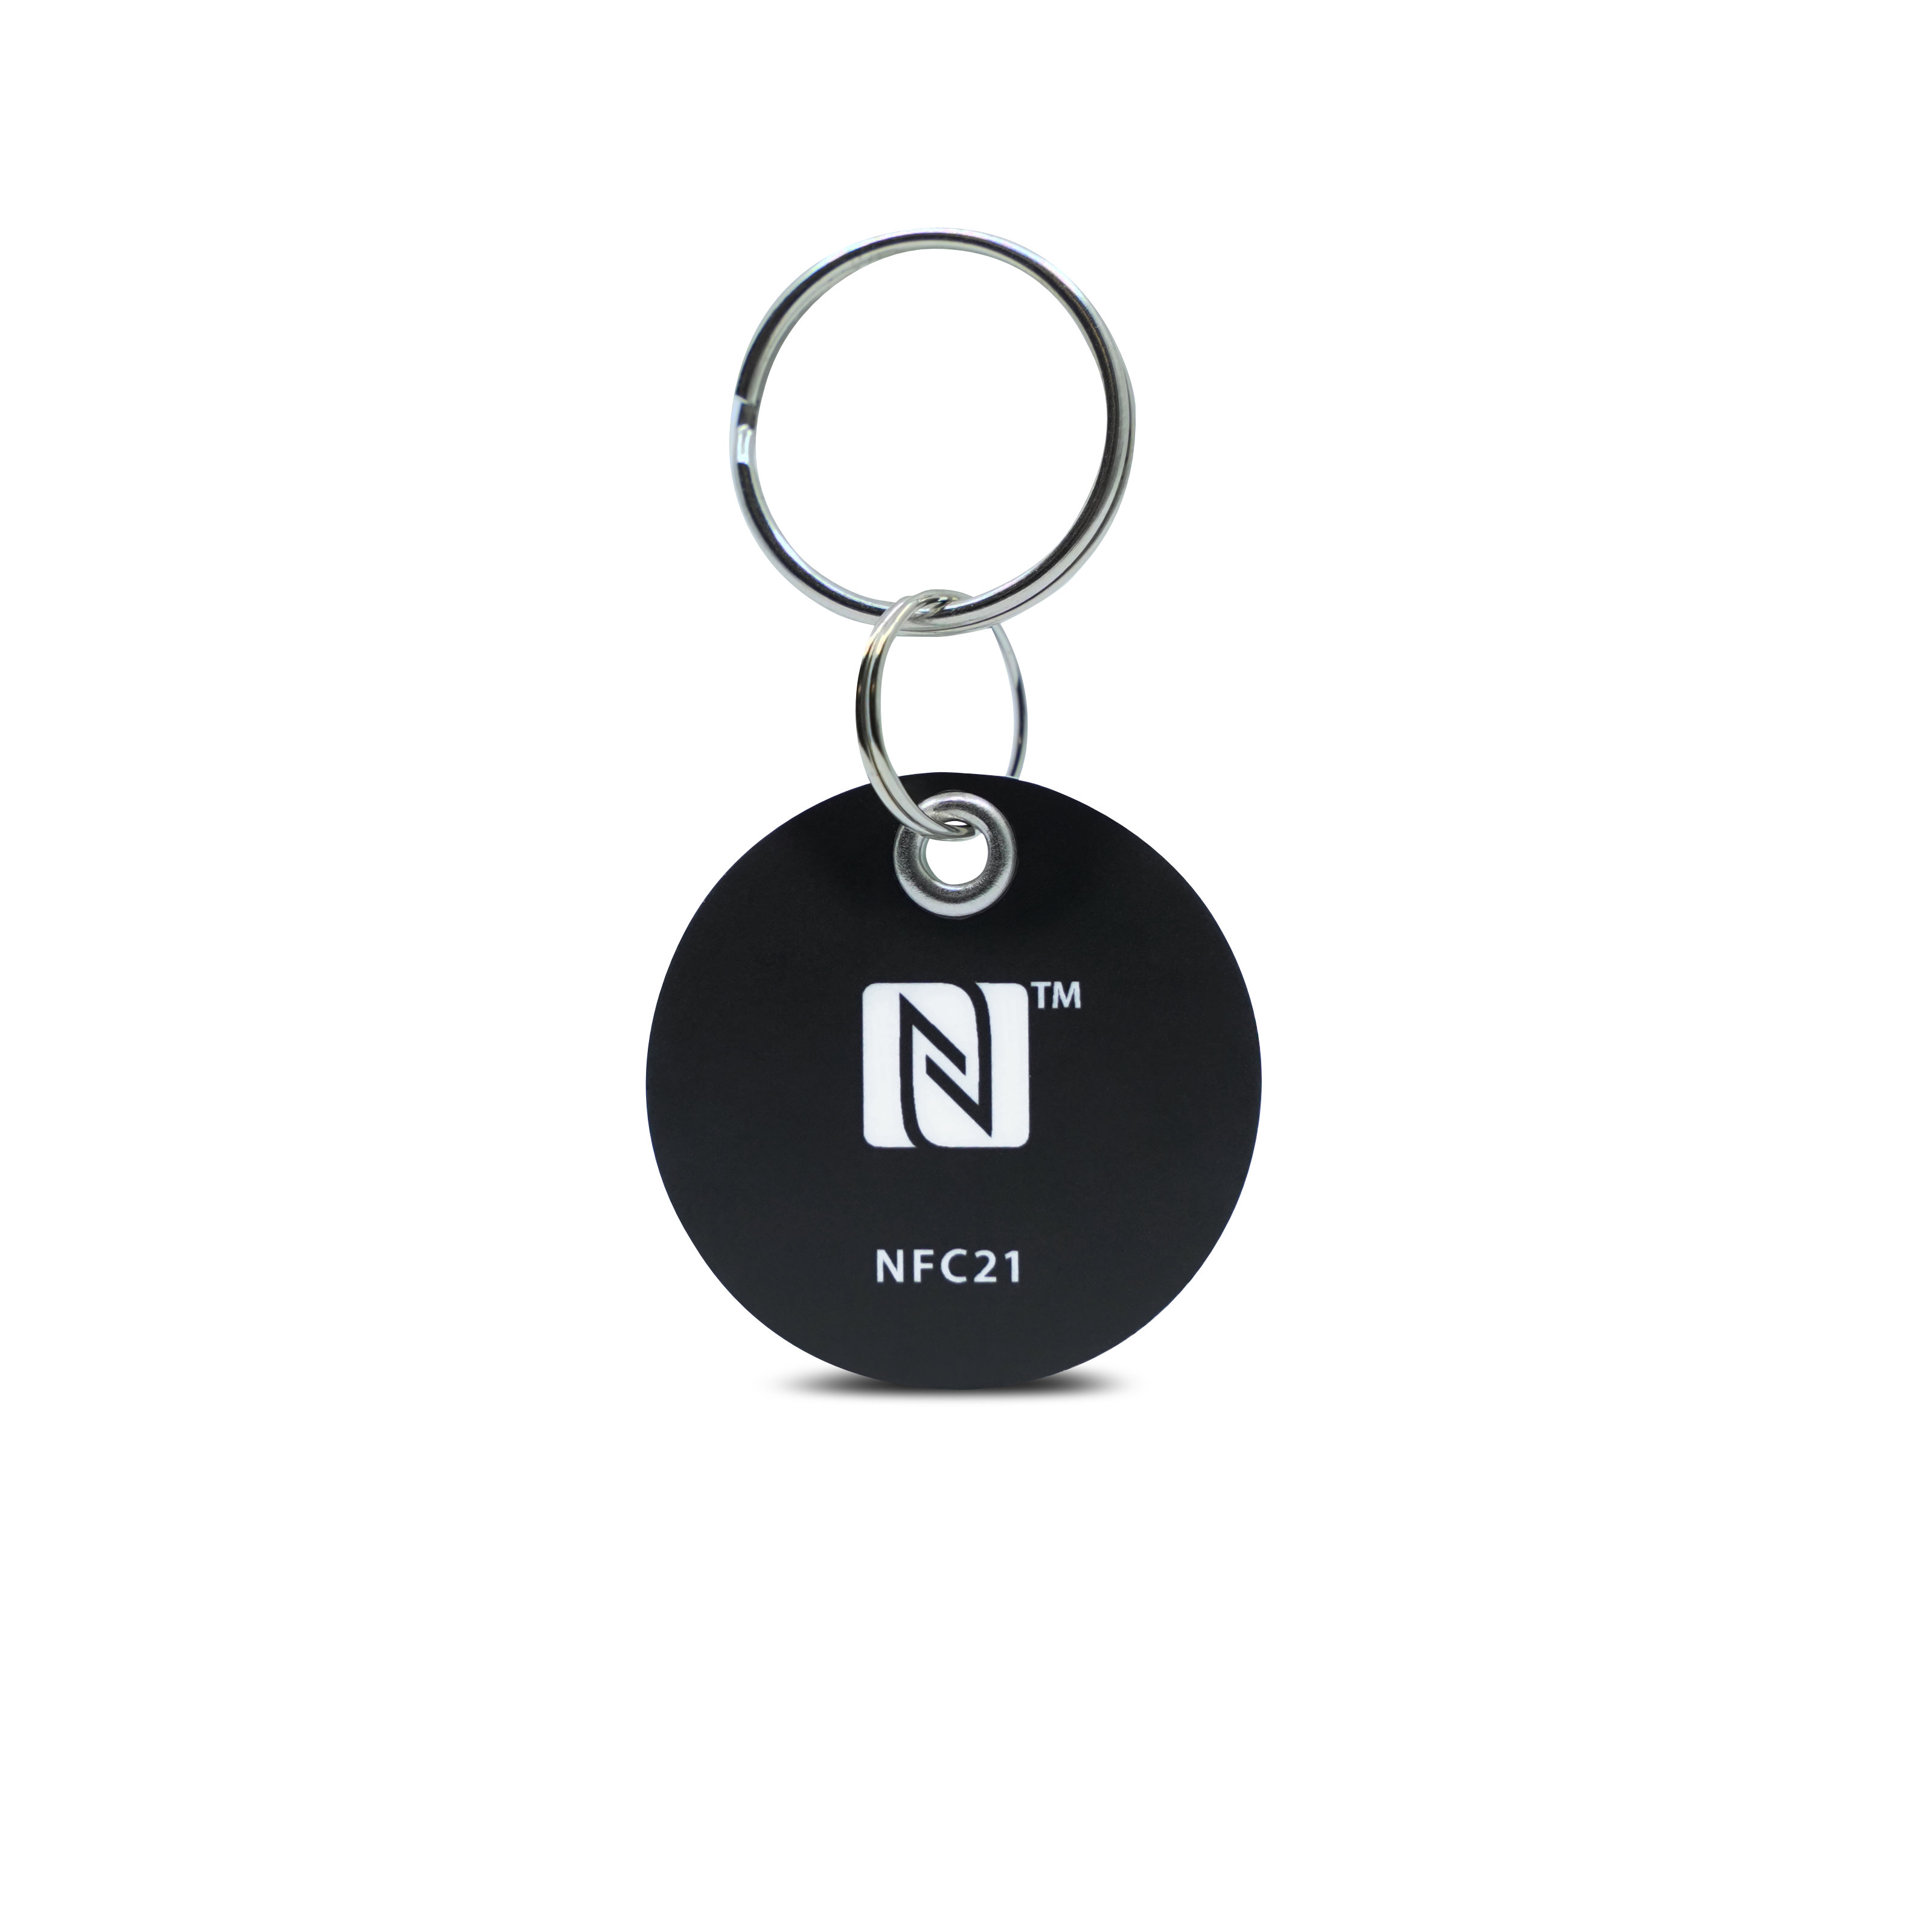 Vorderseite des NFC Schlüsselanhängers aus PVC in schwarz mit Metallring